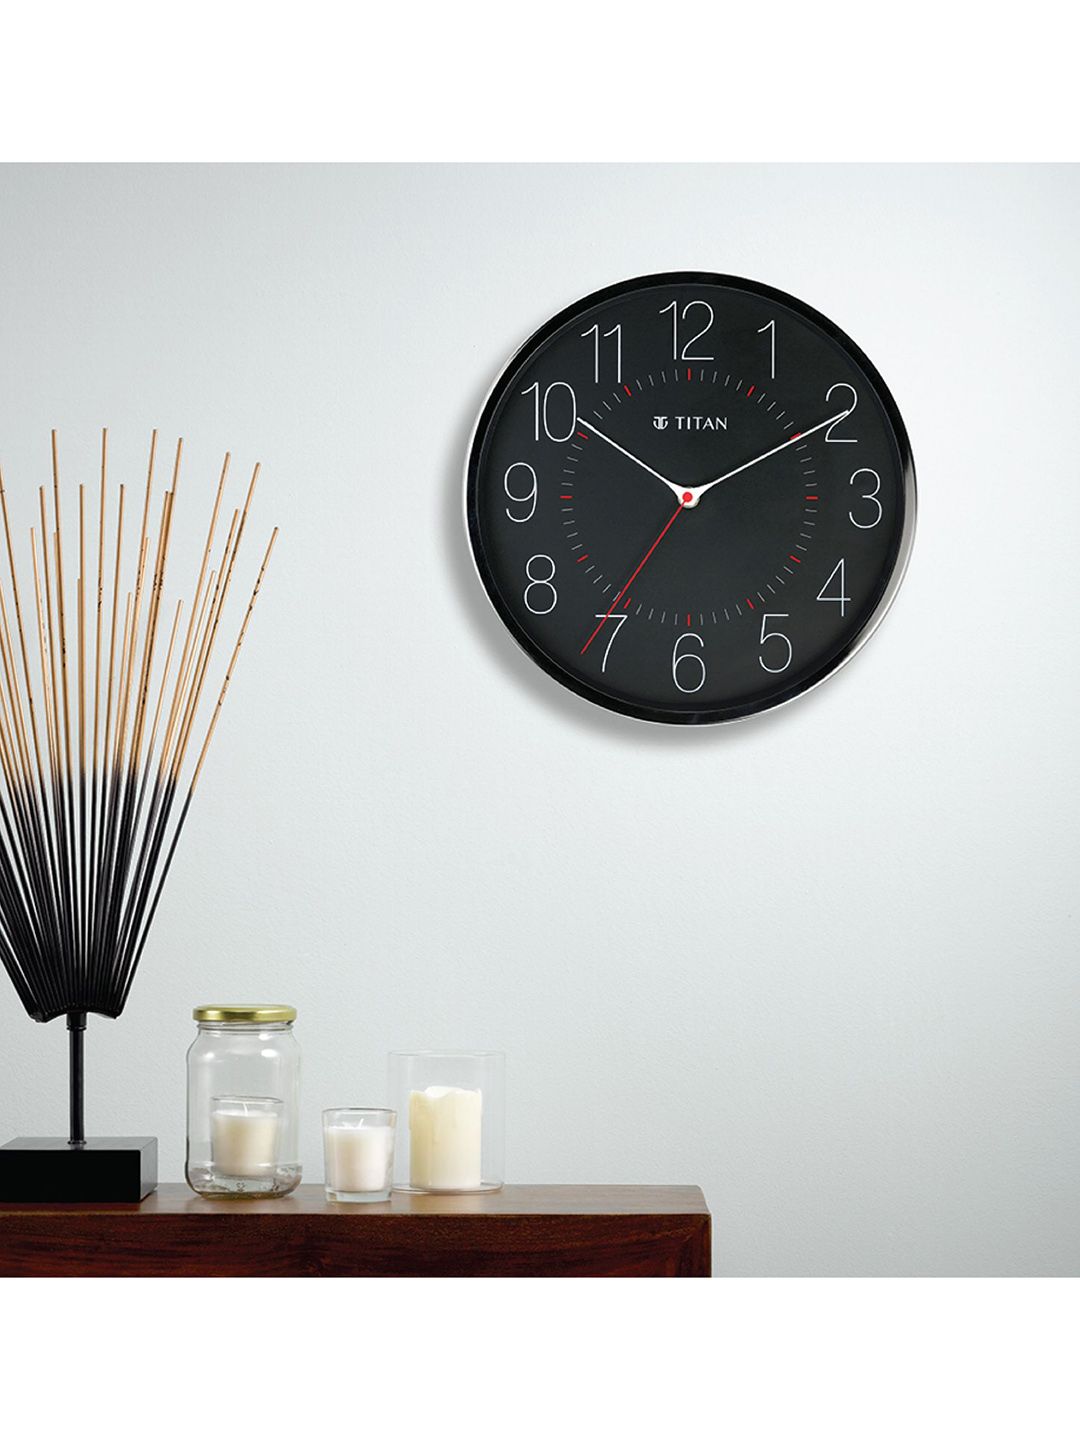 Titan Black Contemporary Wall Clock Price in India